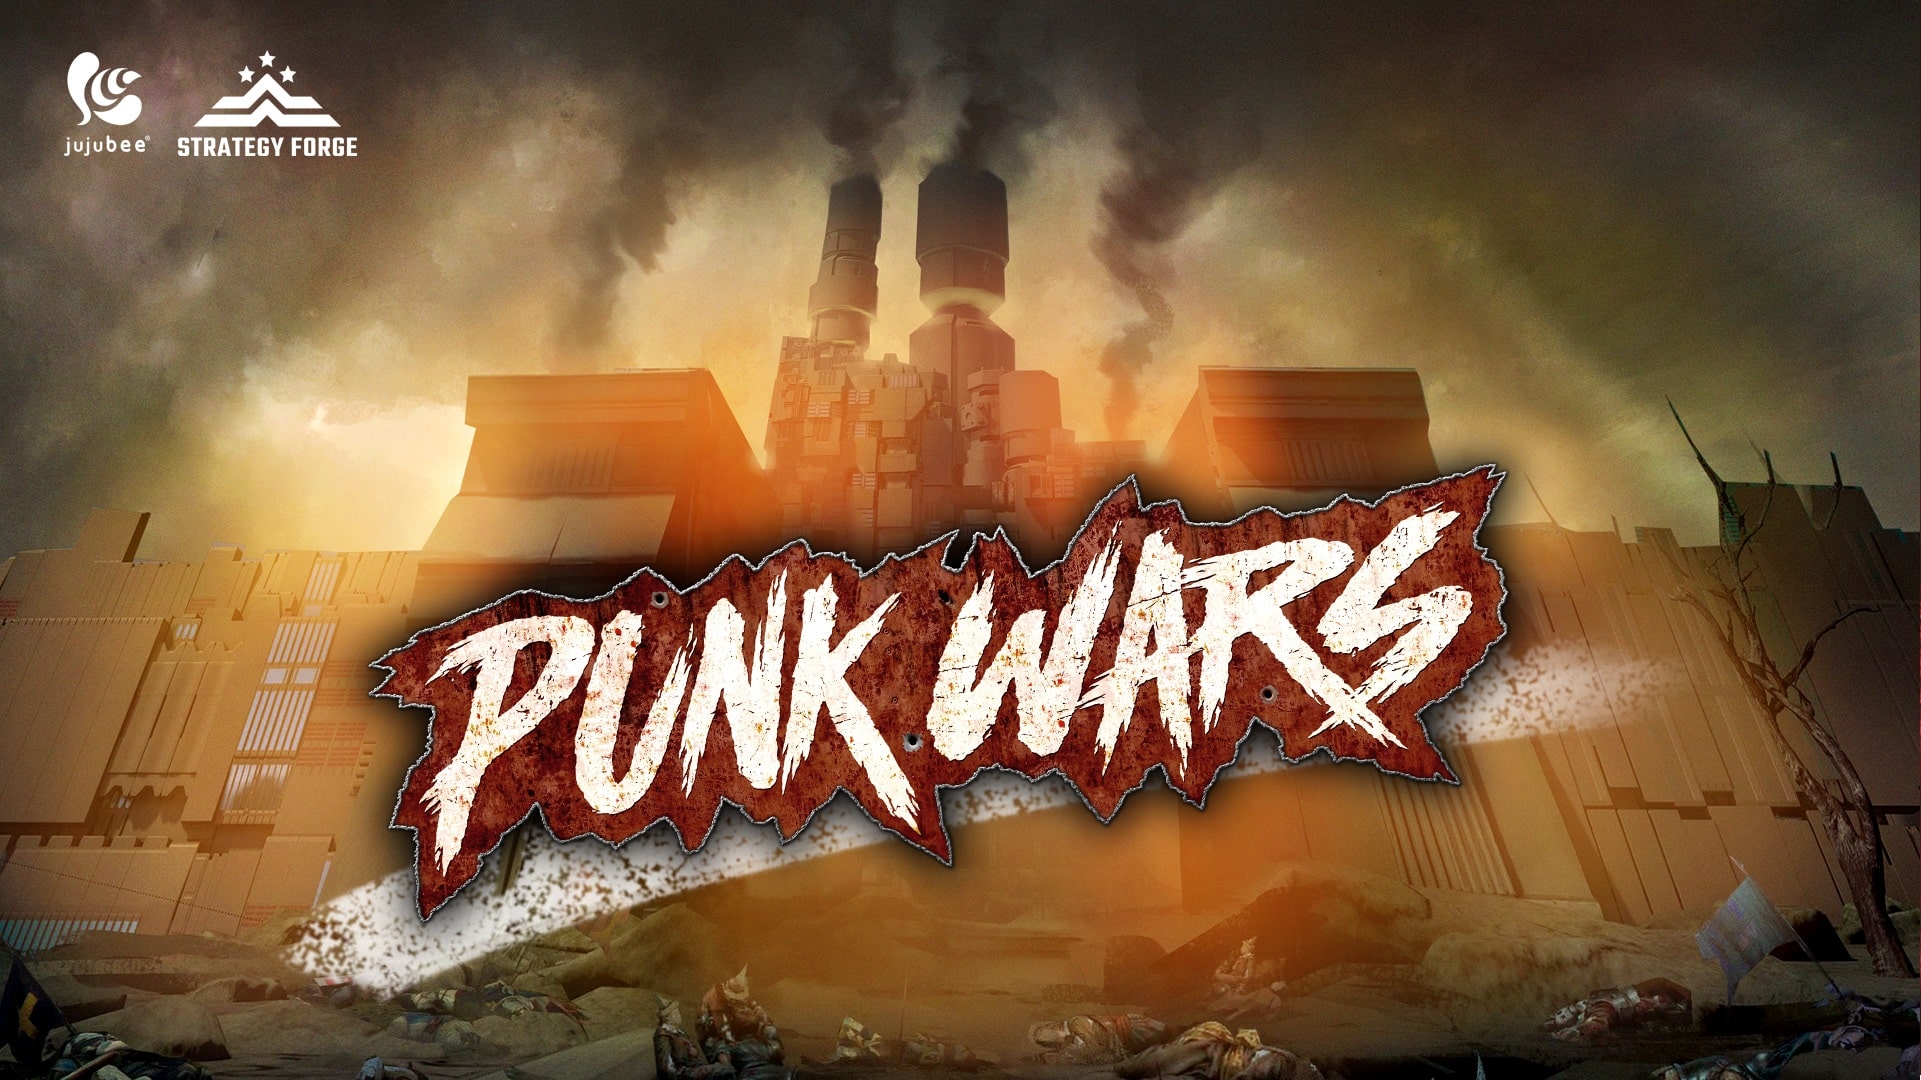 Punk wars agora disponível via steam e gog. Com | b022a107 punk3 | bandai namco entertainment | super robot wars bandai namco entertainment